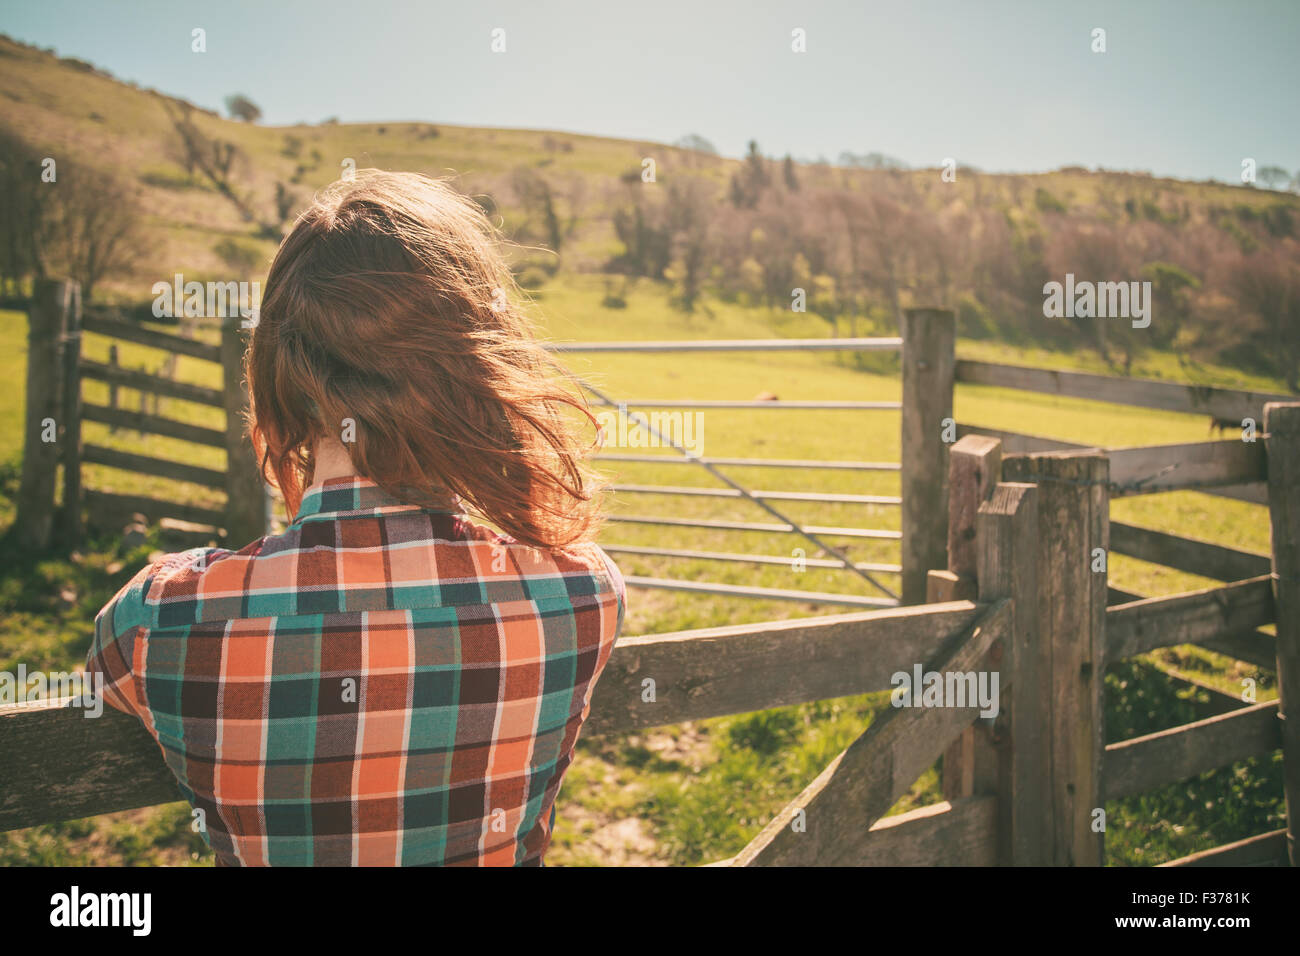 Junge Frau ist von einem Zaun auf einer Ranch mit Rindern in der Ferne stehen. Stockfoto